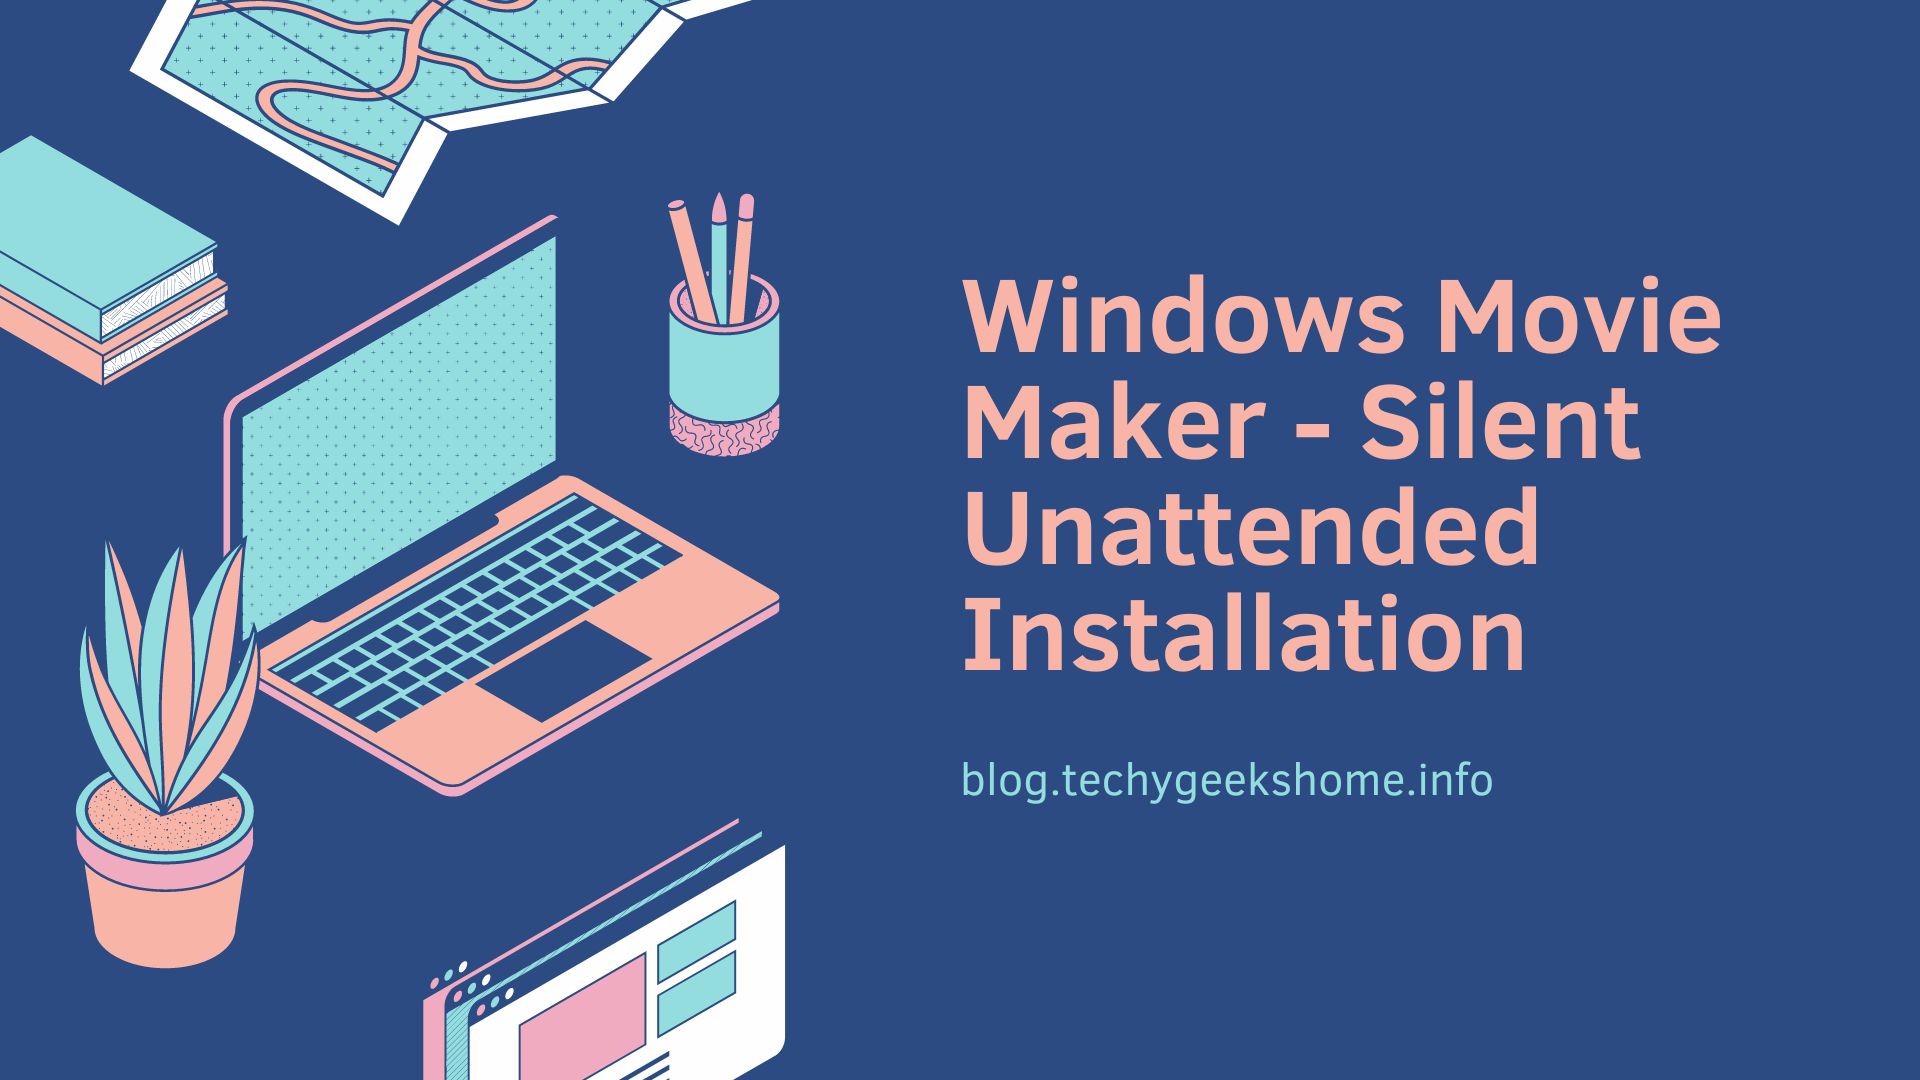 Windows Movie Maker - Silent Unattended Installation